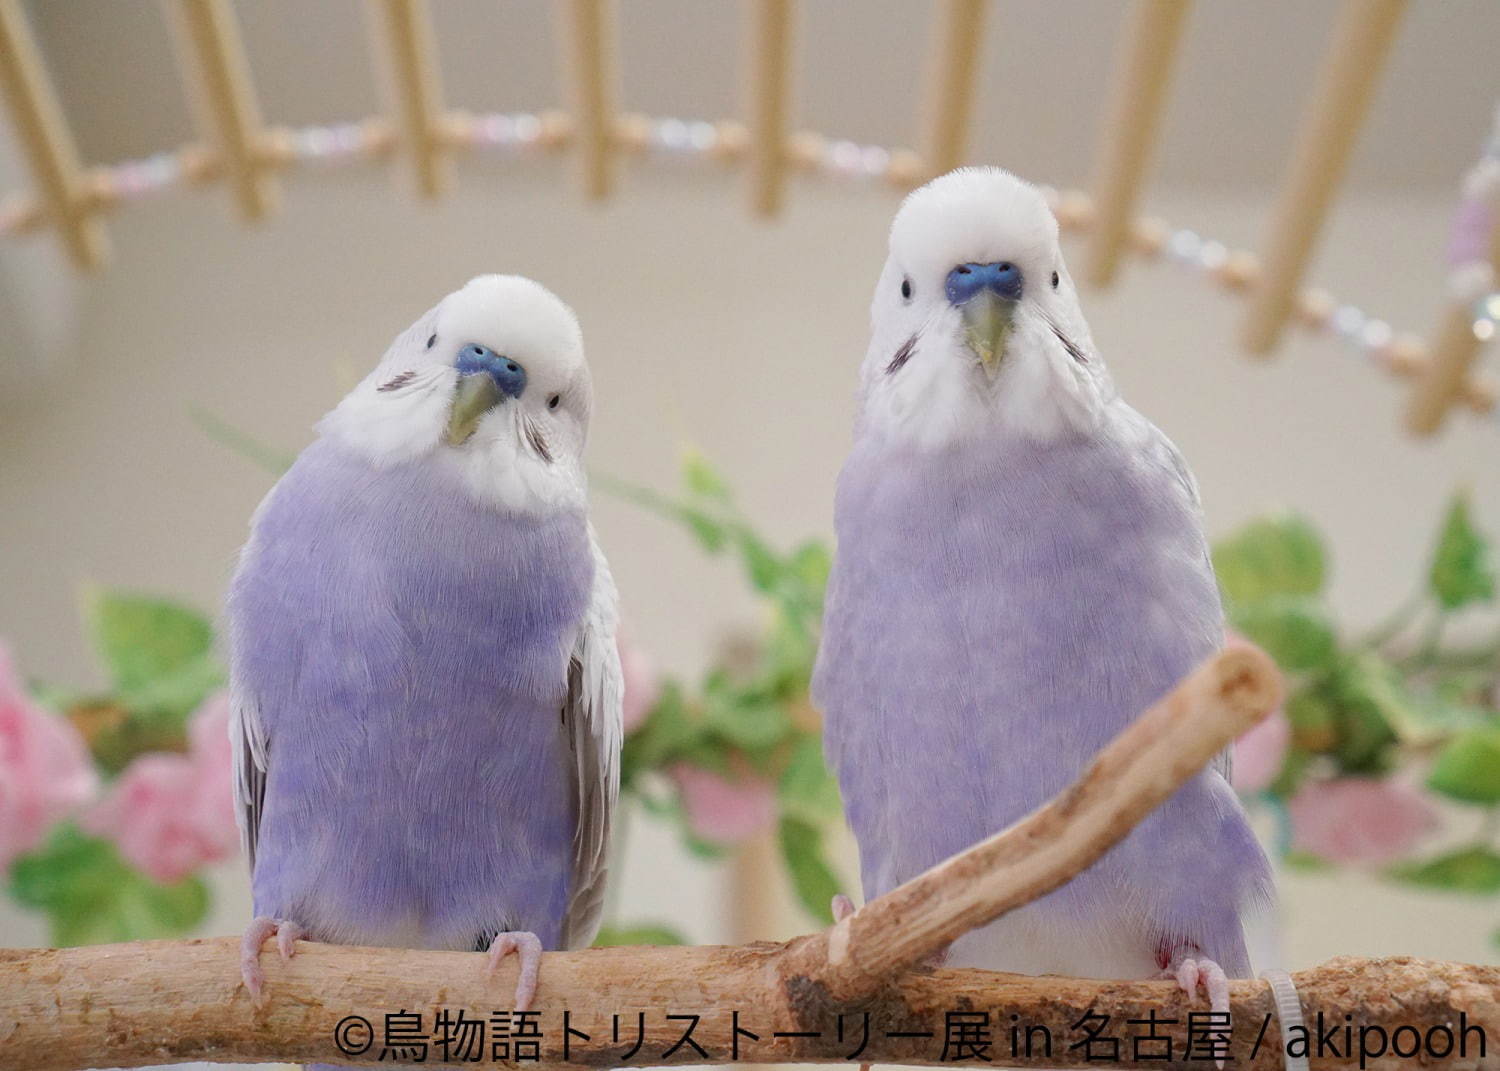 「鳥物語トリストーリー展」名古屋で、鳥の“一瞬の美しさ”を表した写真展＆ハンドメイドグッズ物販｜写真3